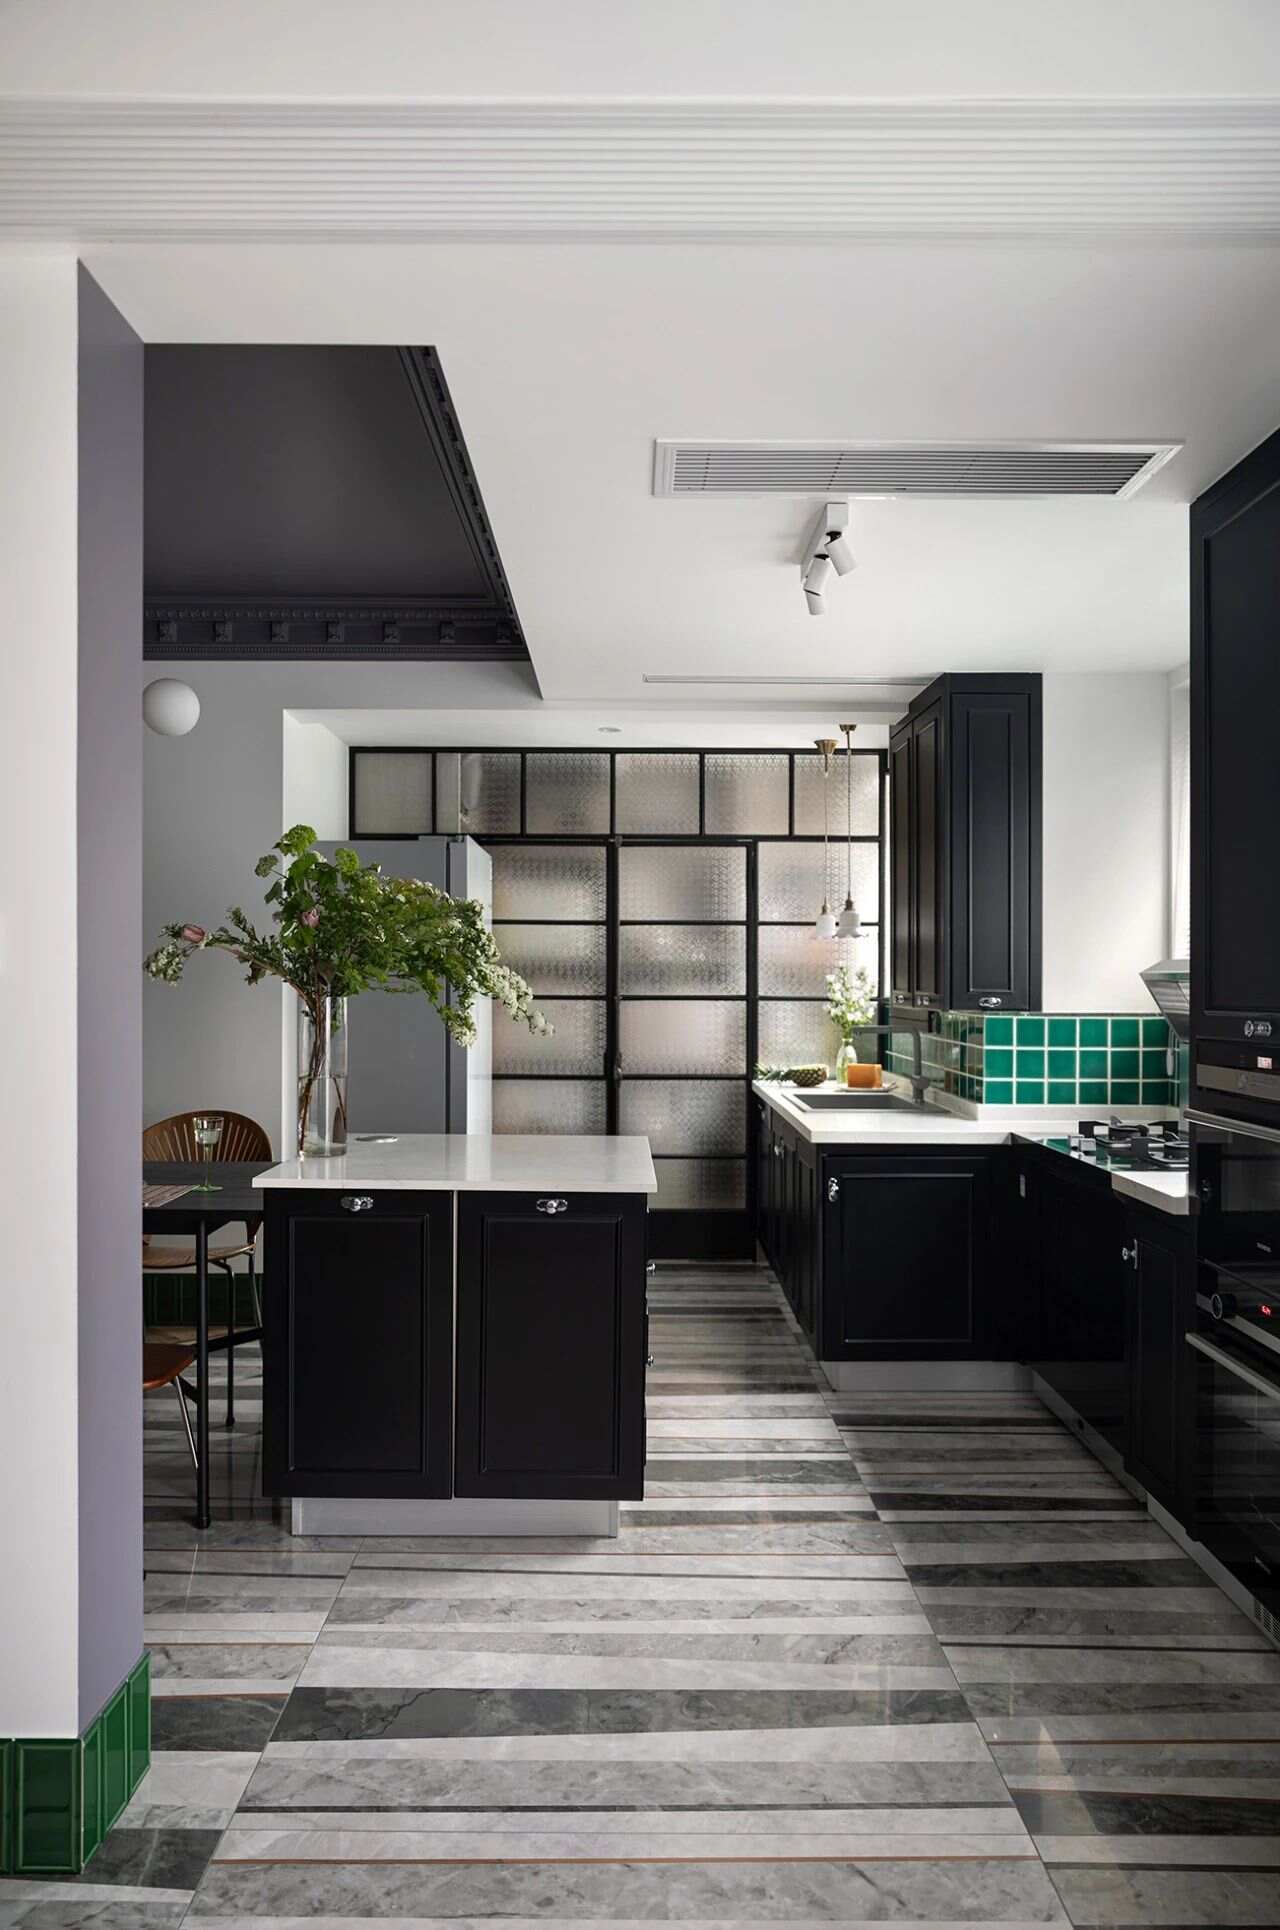 　厨房天花板颜色可以使用比较明亮的，护墙板和地面选择暗色系，这样整体给人的感觉比较稳定。厨房向北，就选择暖色系来提高室内温感，厨房朝东南，宜采用冷色系达到凉爽的效果